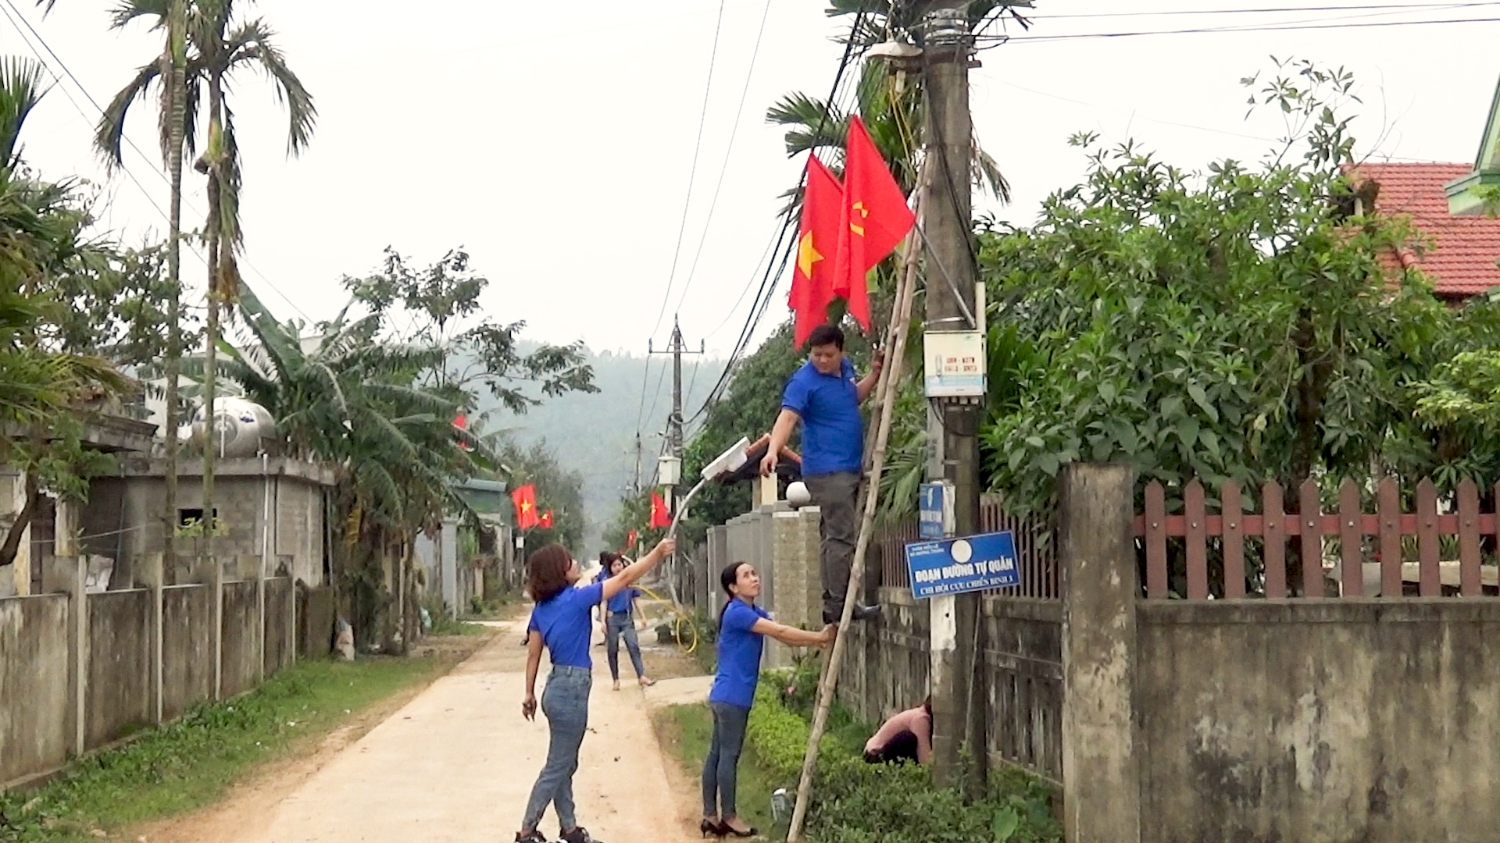 Đoàn thanh niên xã Quảng Trung thực hiện công trình “Thắp sáng đường quê” tại thôn Biểu Lệ.